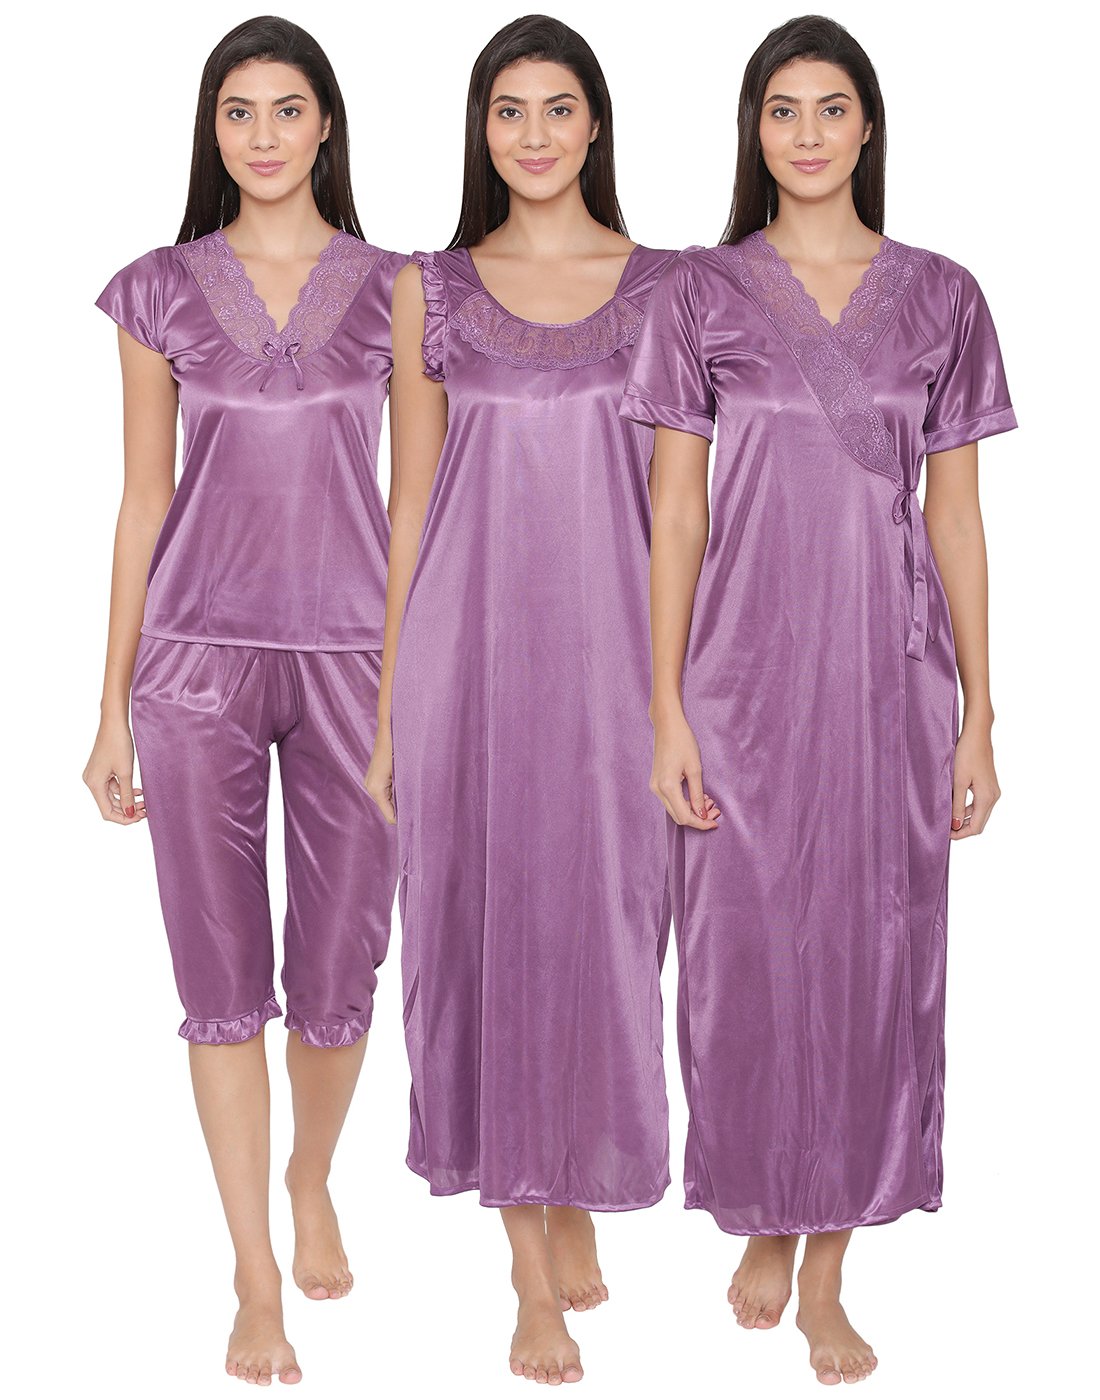 4 Pcs Nightwear In Purple – Satin